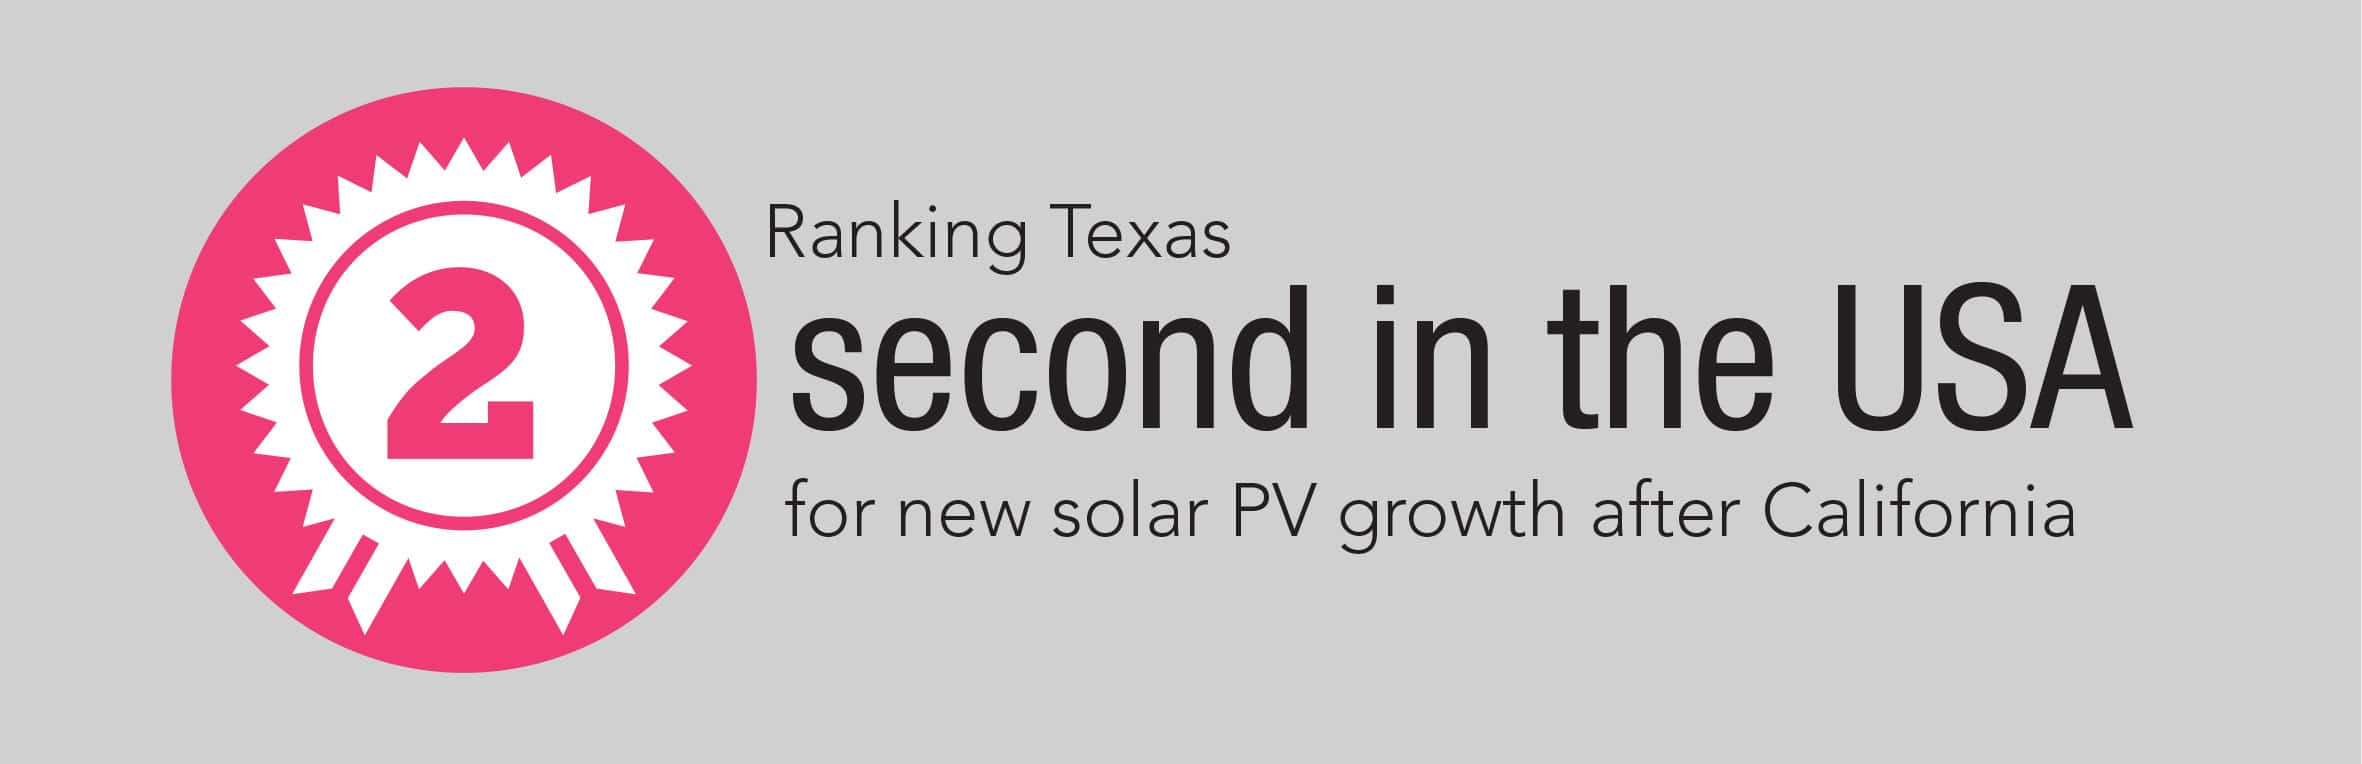 Texas Solar in 2018